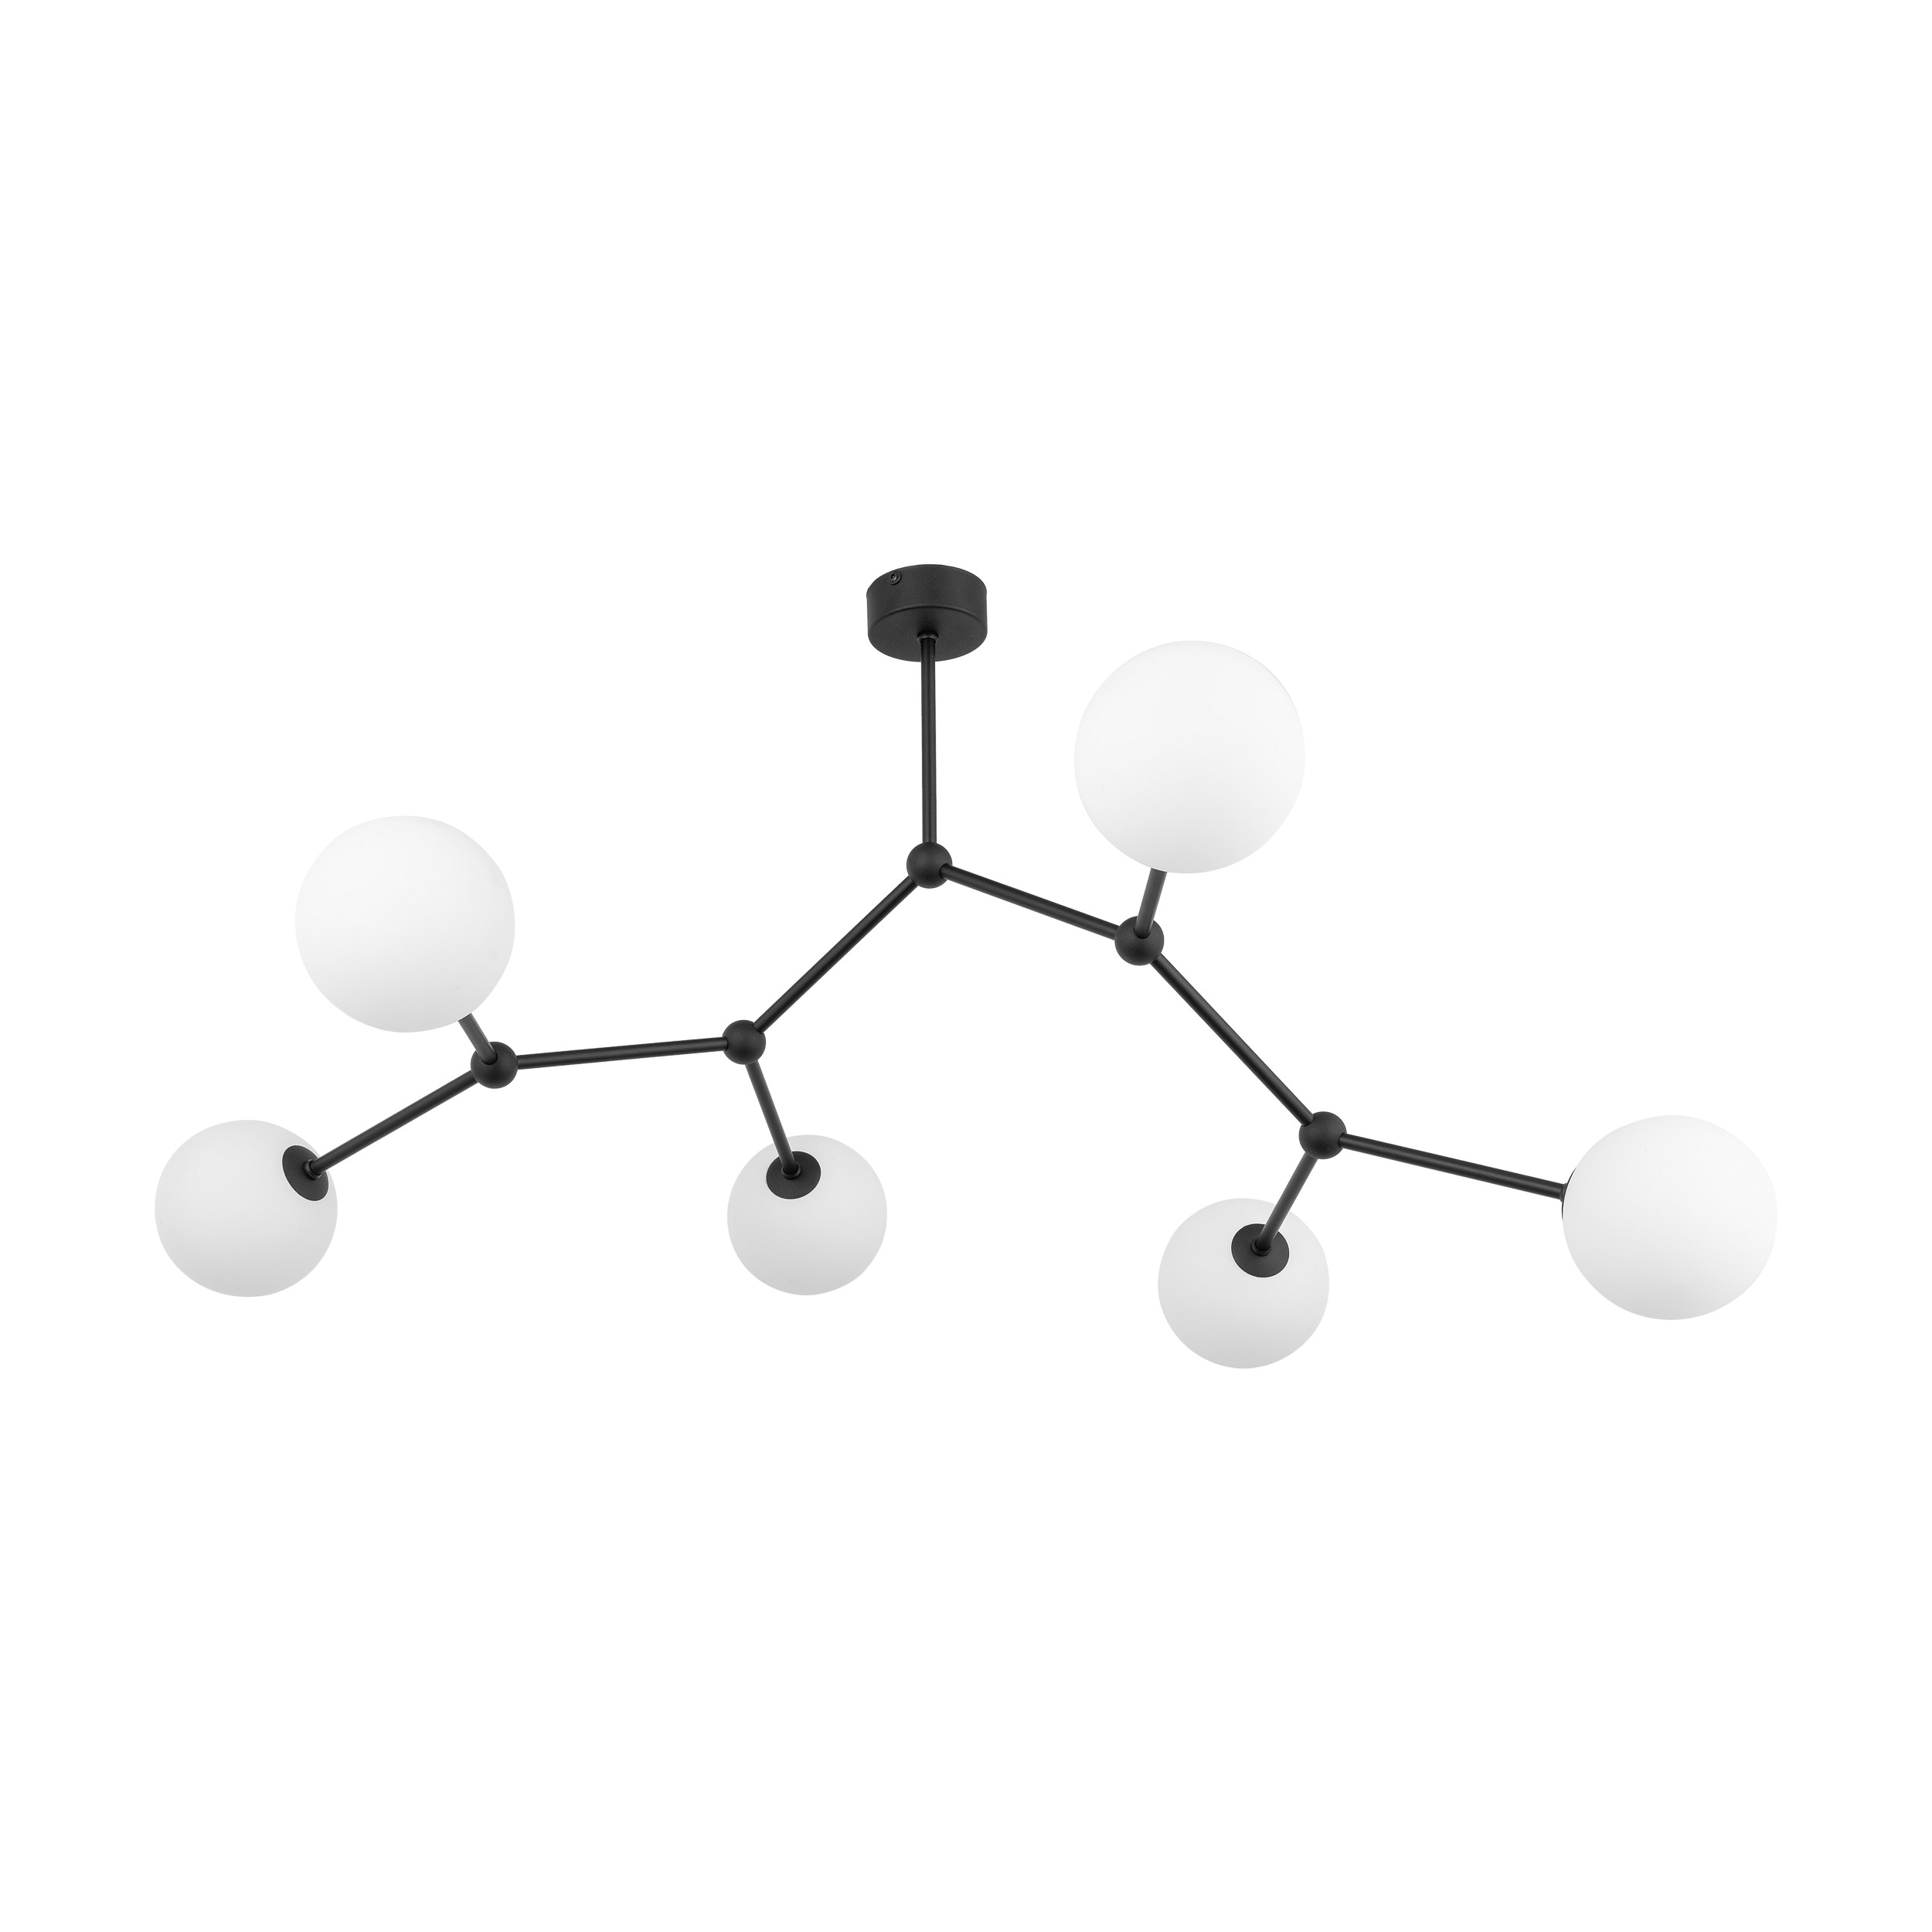 Sufitowa lampa molekuy, 6xG9 FAIRY BLACK 4856